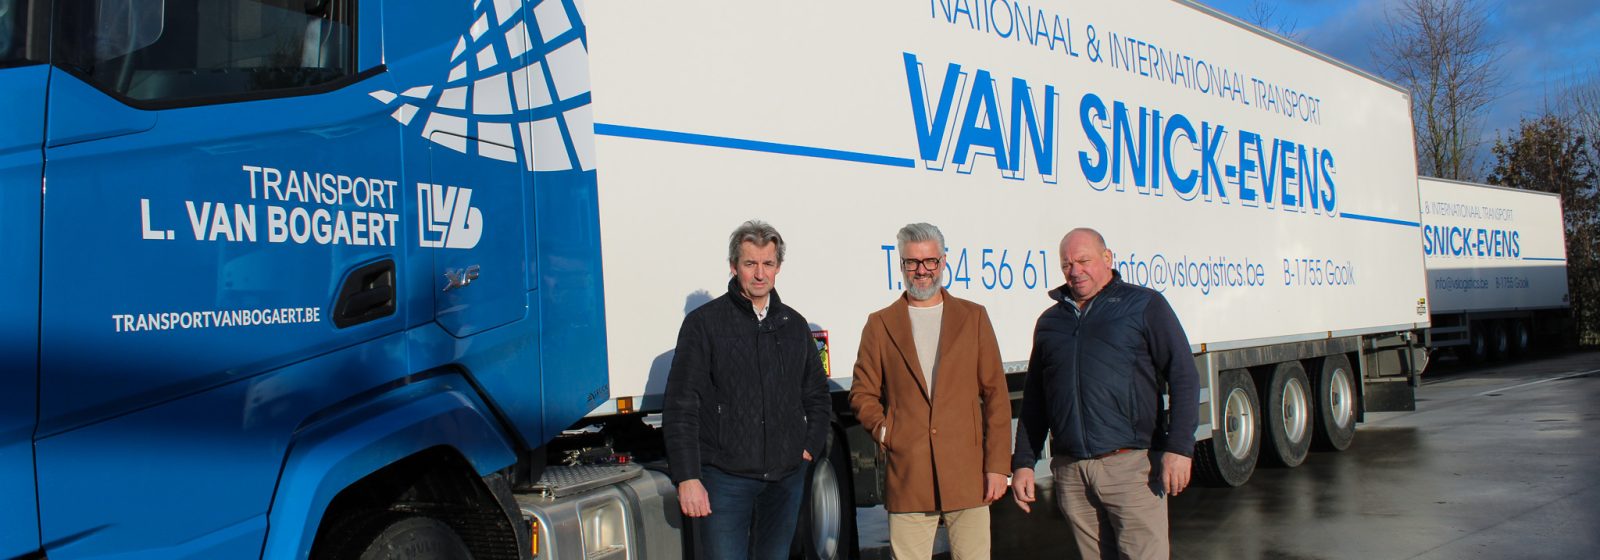 V.l.n.r.: Eric Van Snick, Bart Malfliet en Eddy Van Snick